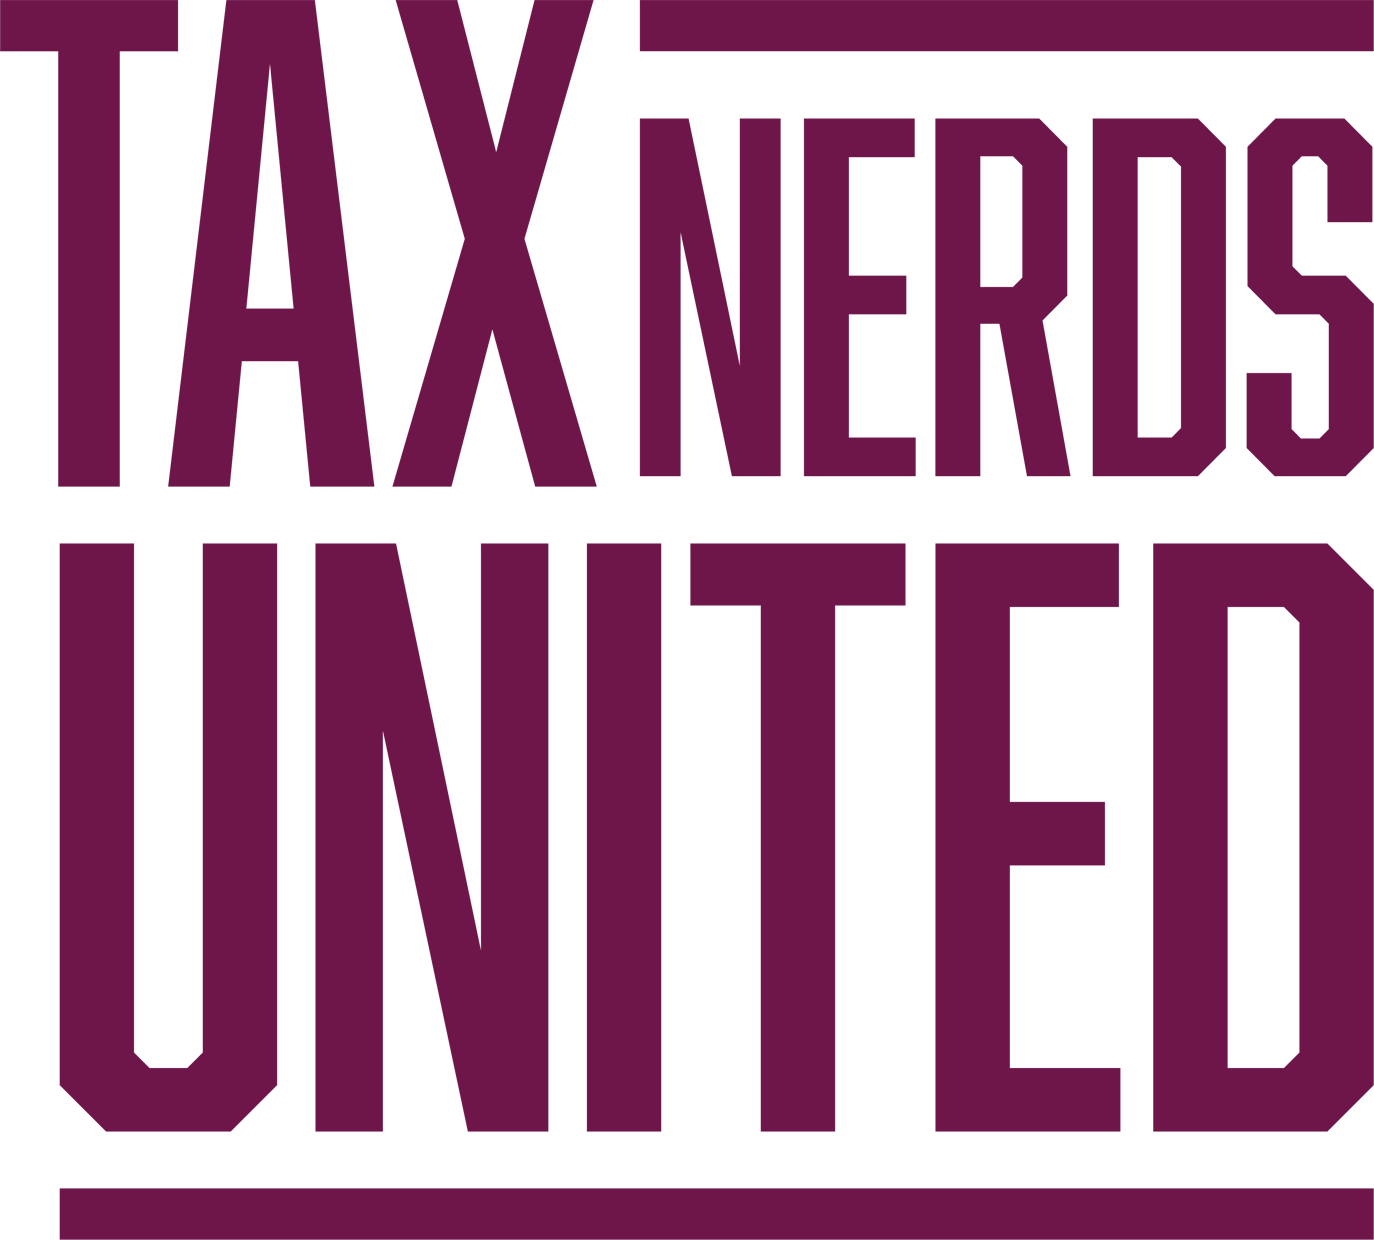 tax nerds united